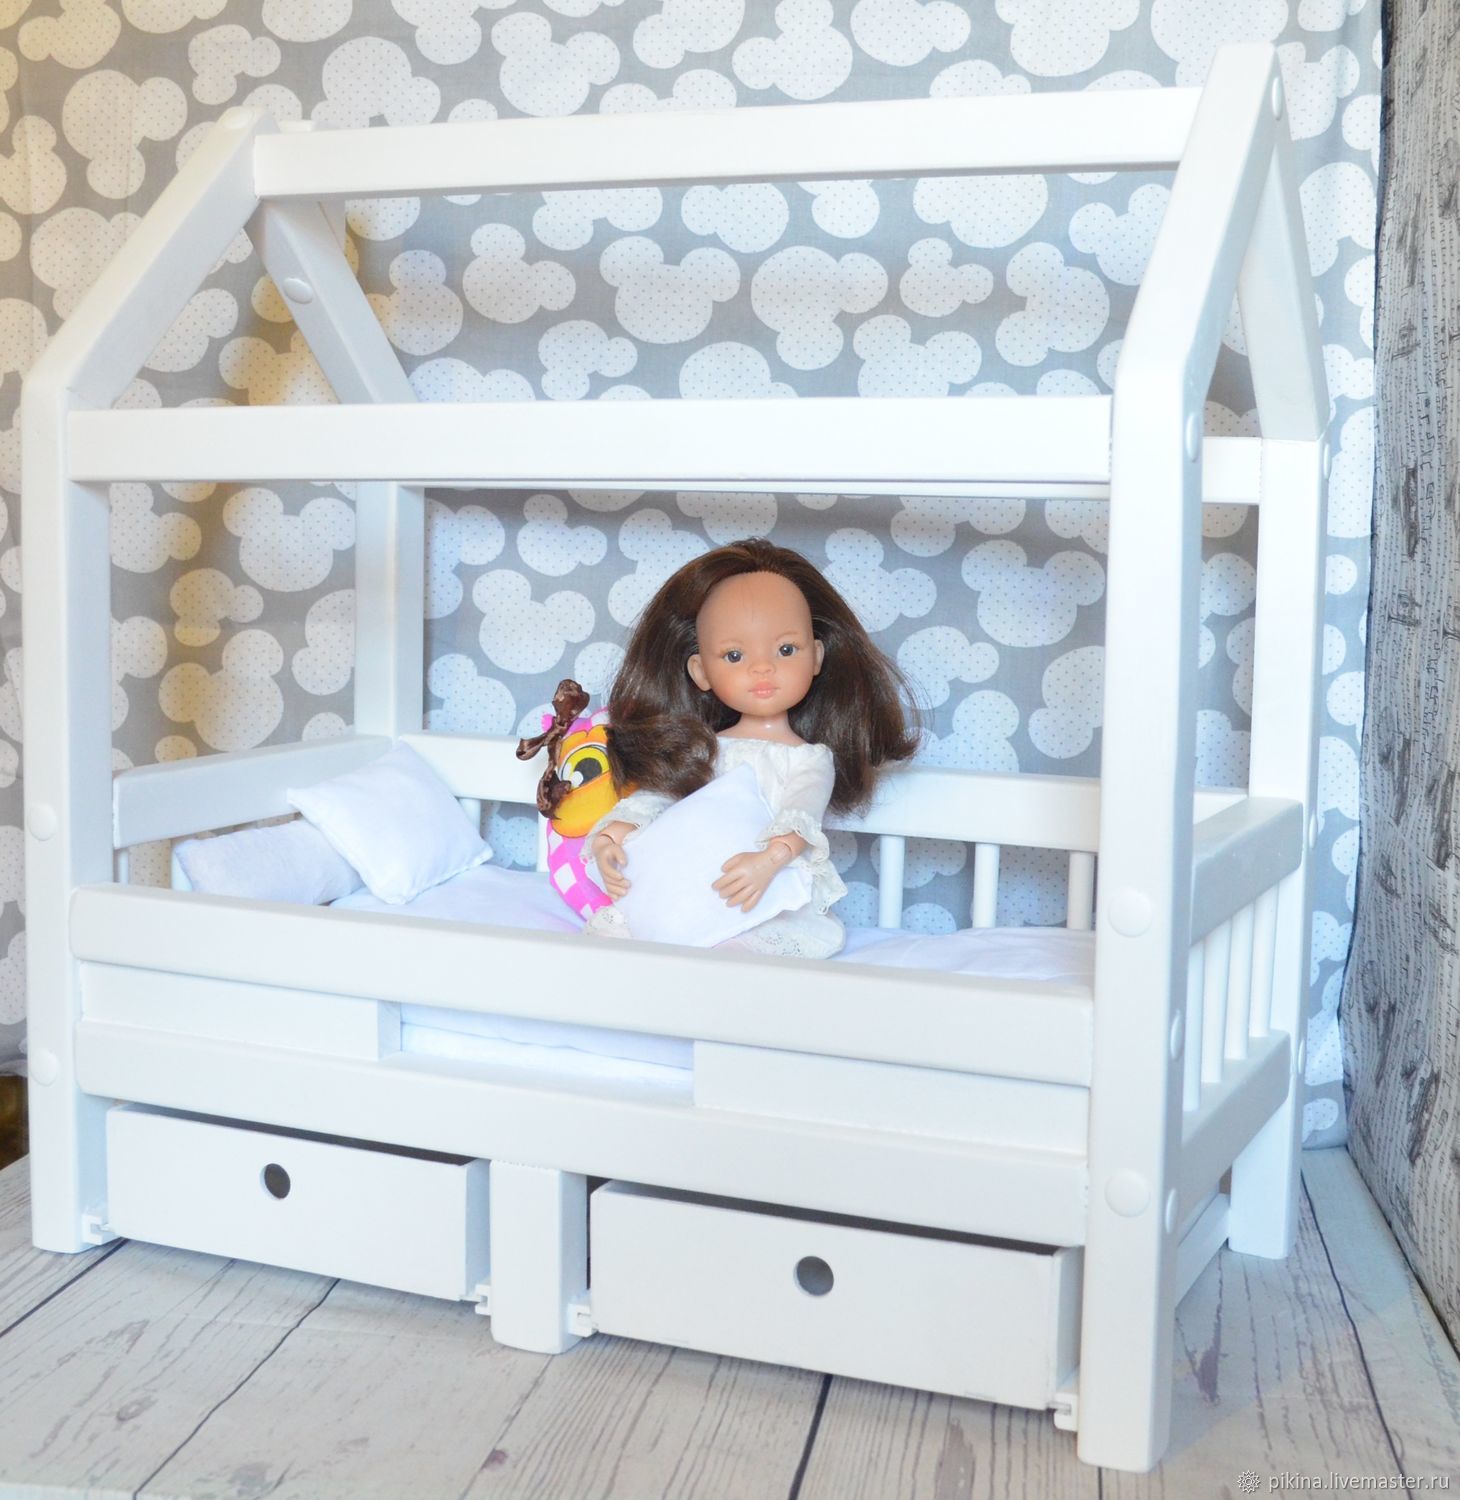 Кровать kidkraft кукольный домик